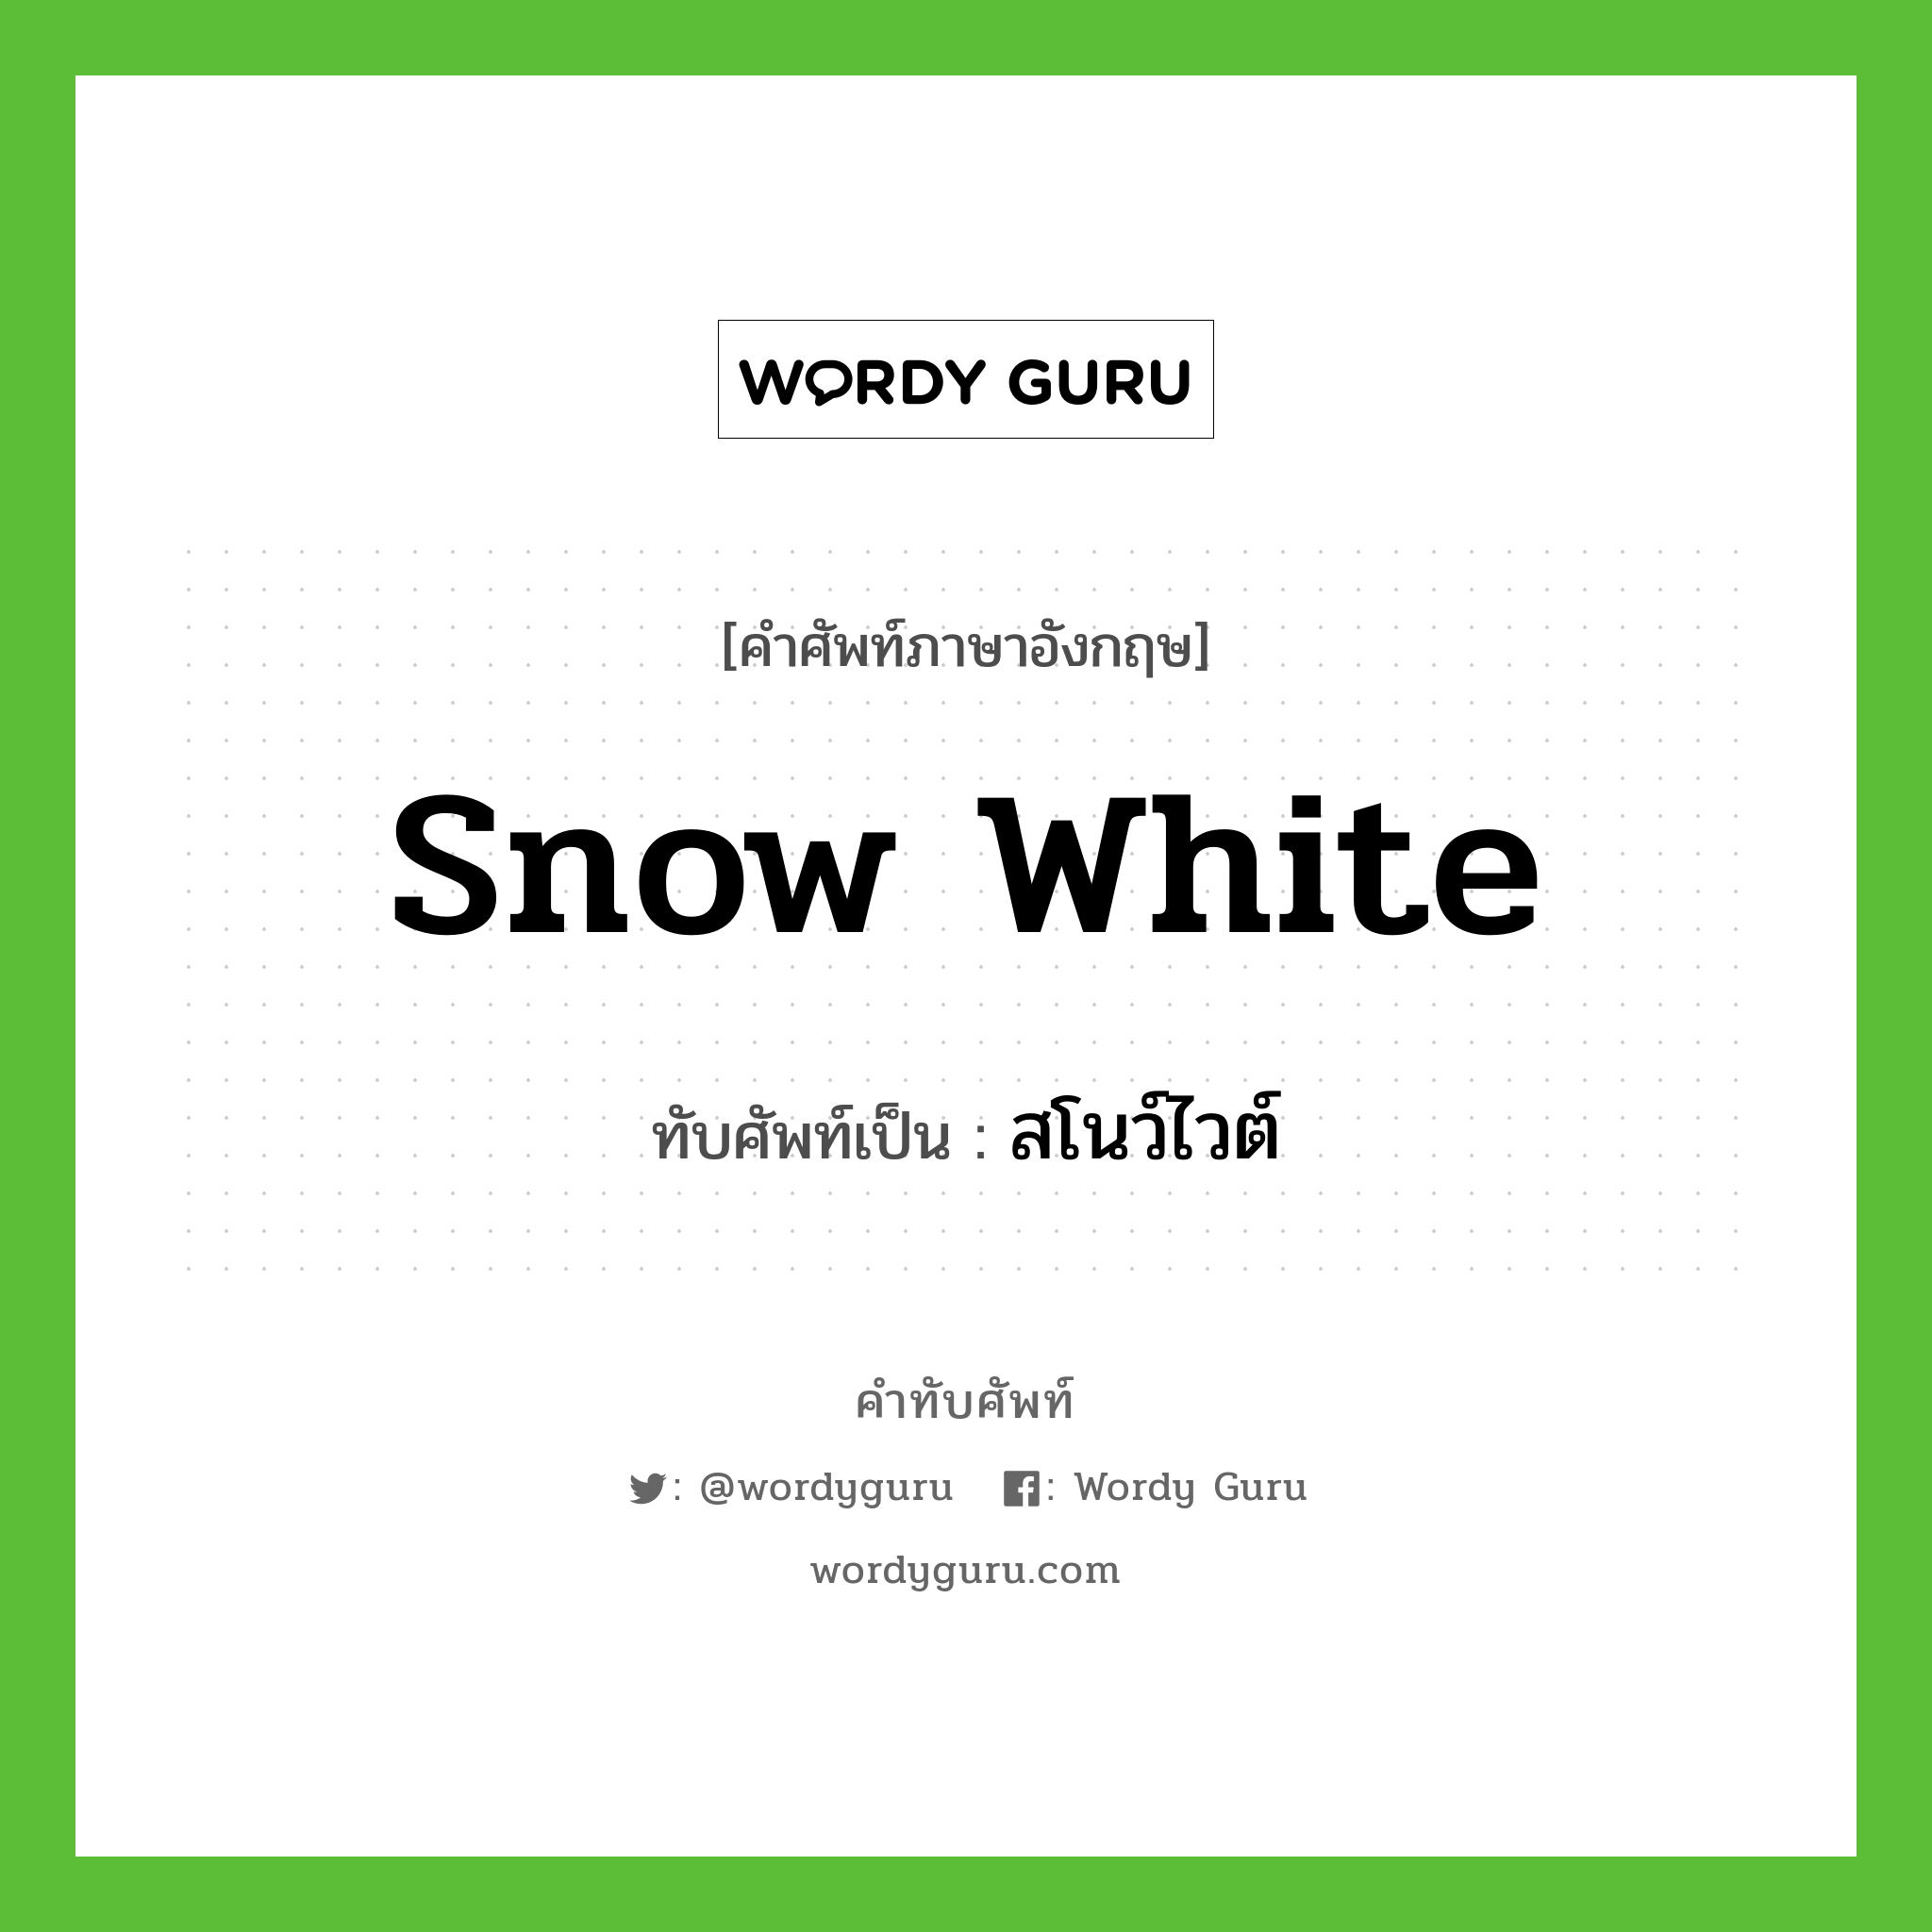 snow white เขียนเป็นคำไทยว่าอะไร?, คำศัพท์ภาษาอังกฤษ snow white ทับศัพท์เป็น สโนว์ไวต์